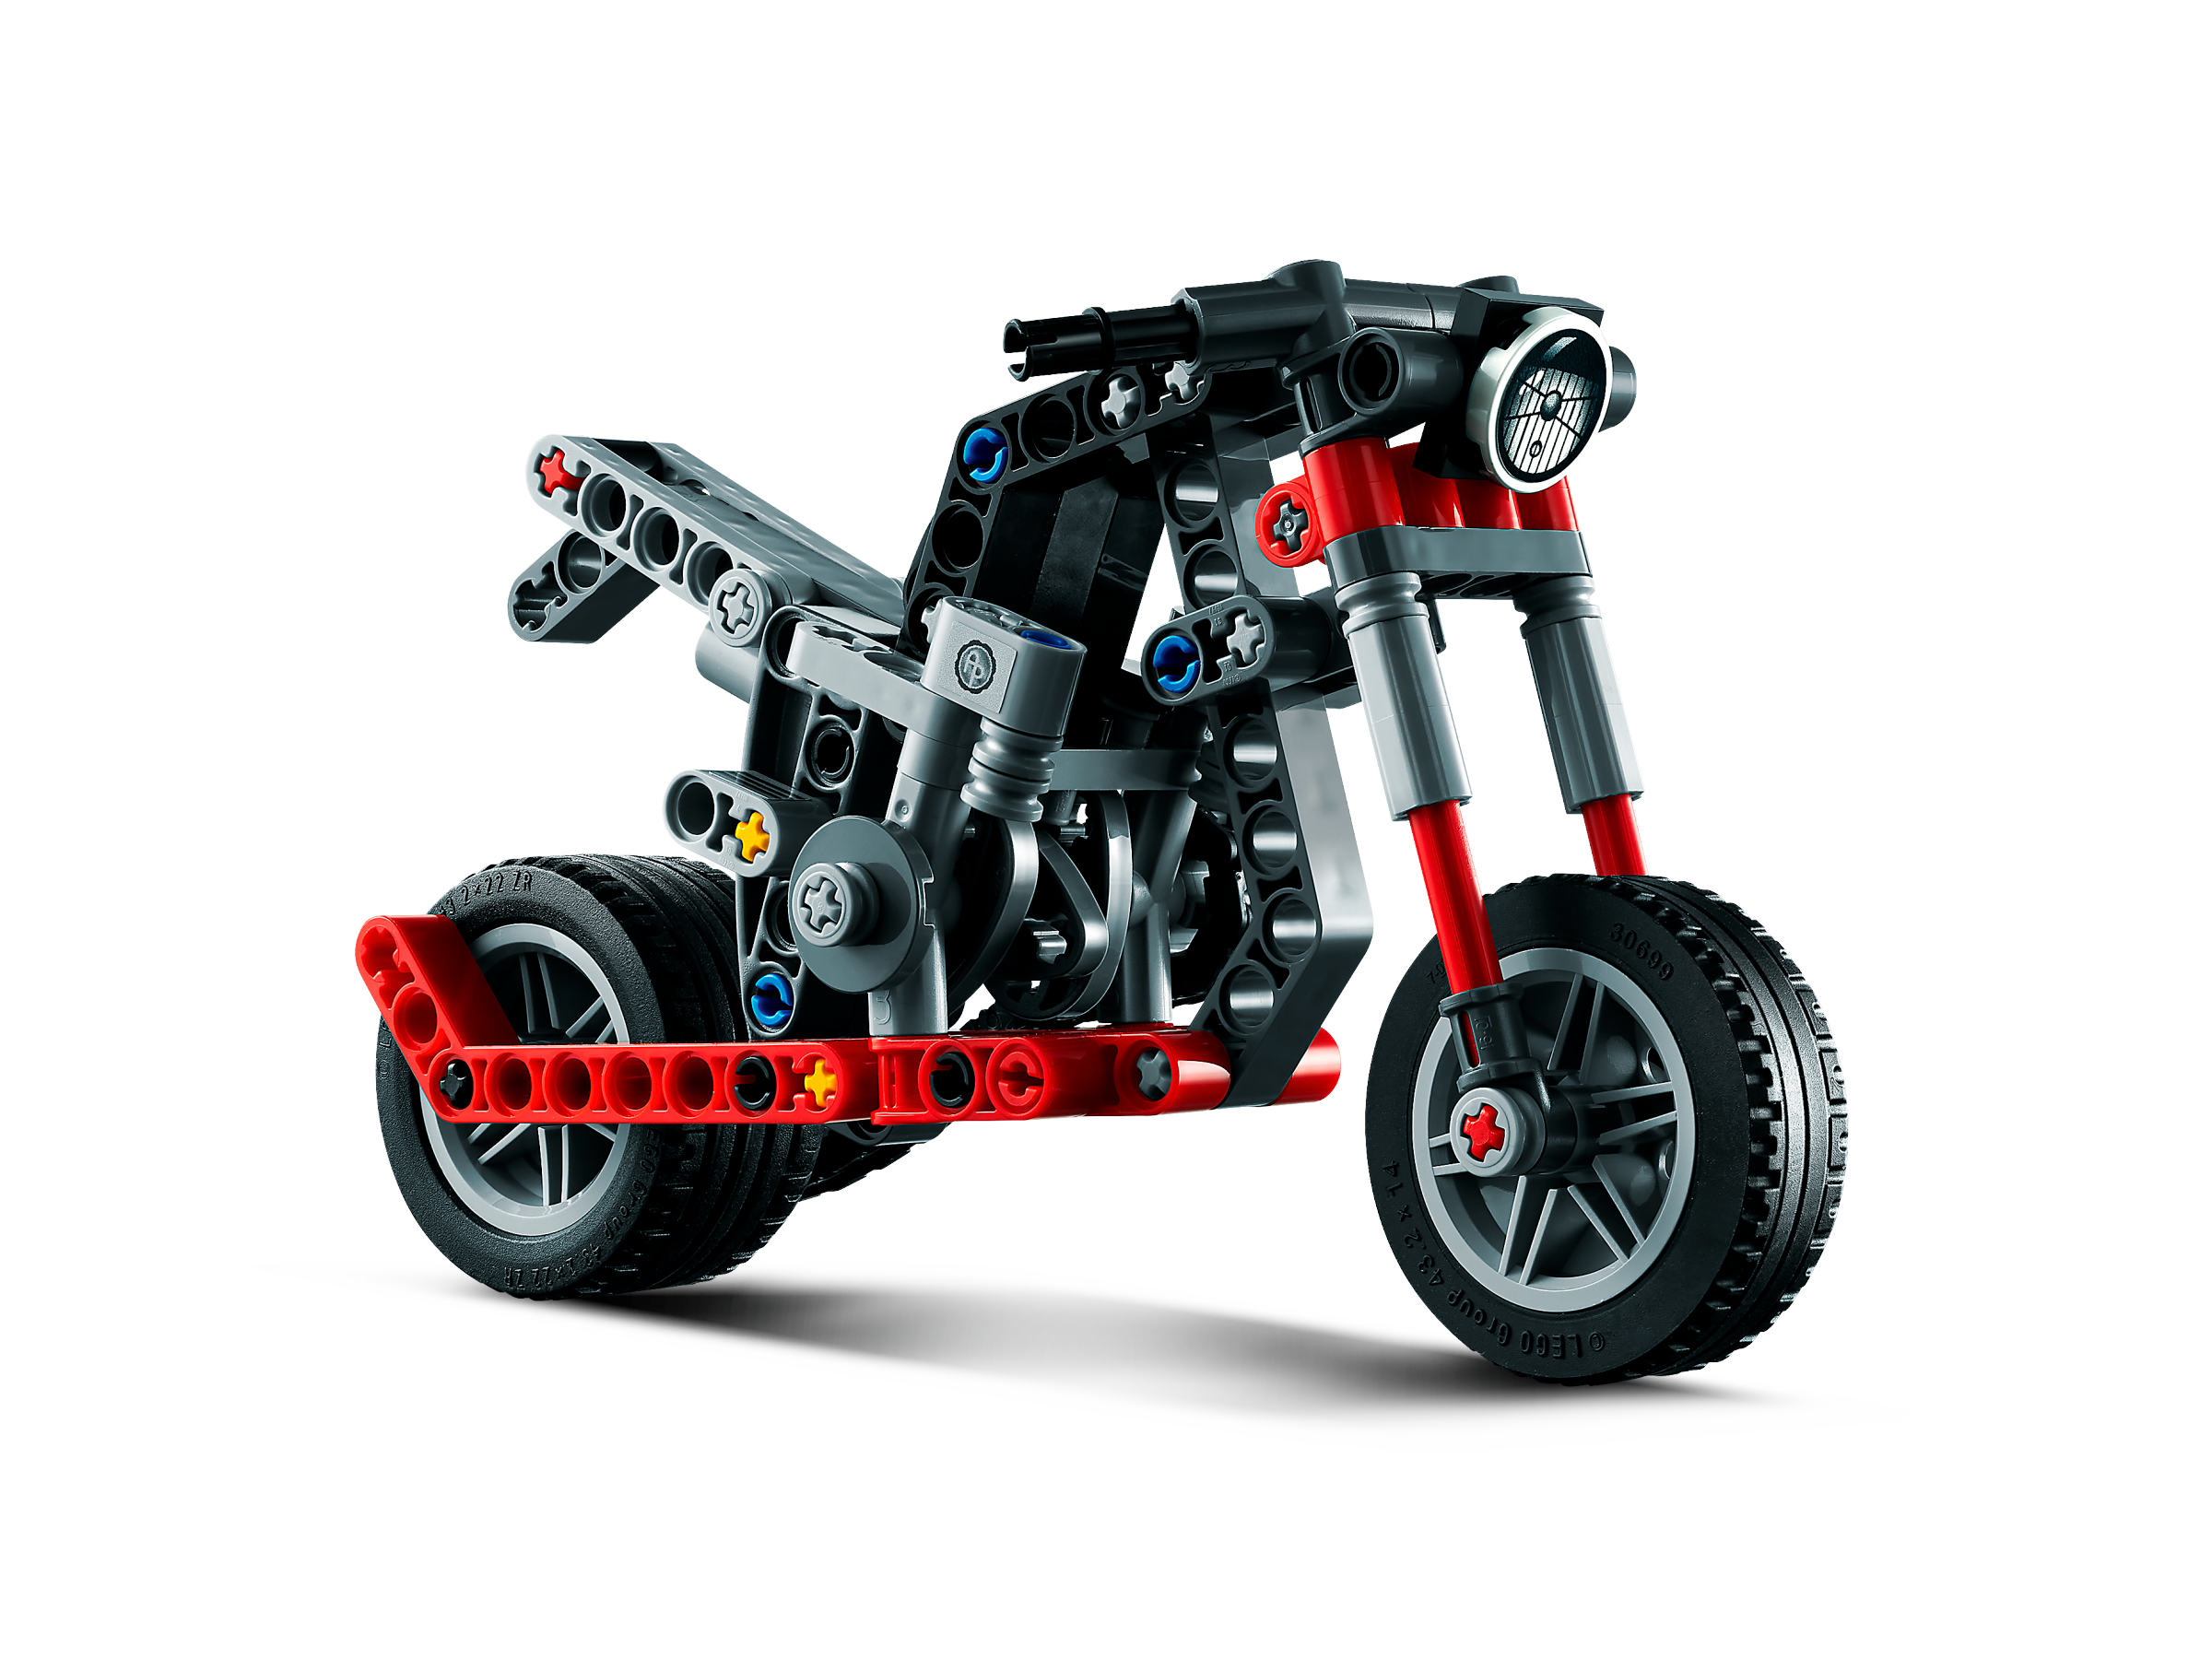 Descripción del negocio fiesta Duquesa Motorcycle 42132 | Technic™ | Buy online at the Official LEGO® Shop US